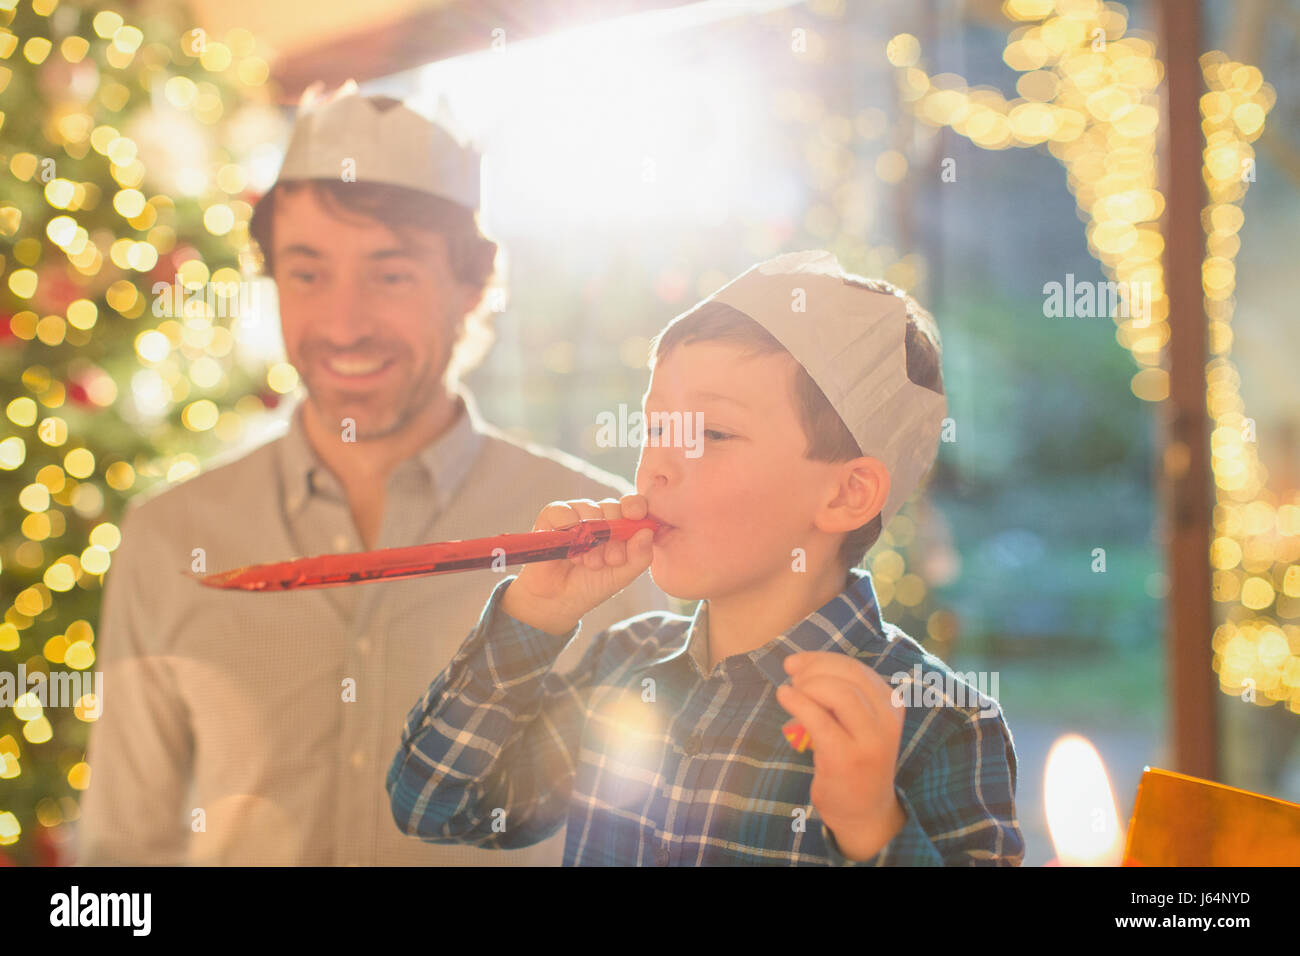 Père et fils wearing Christmas paper crowns et soufflage party favor Banque D'Images